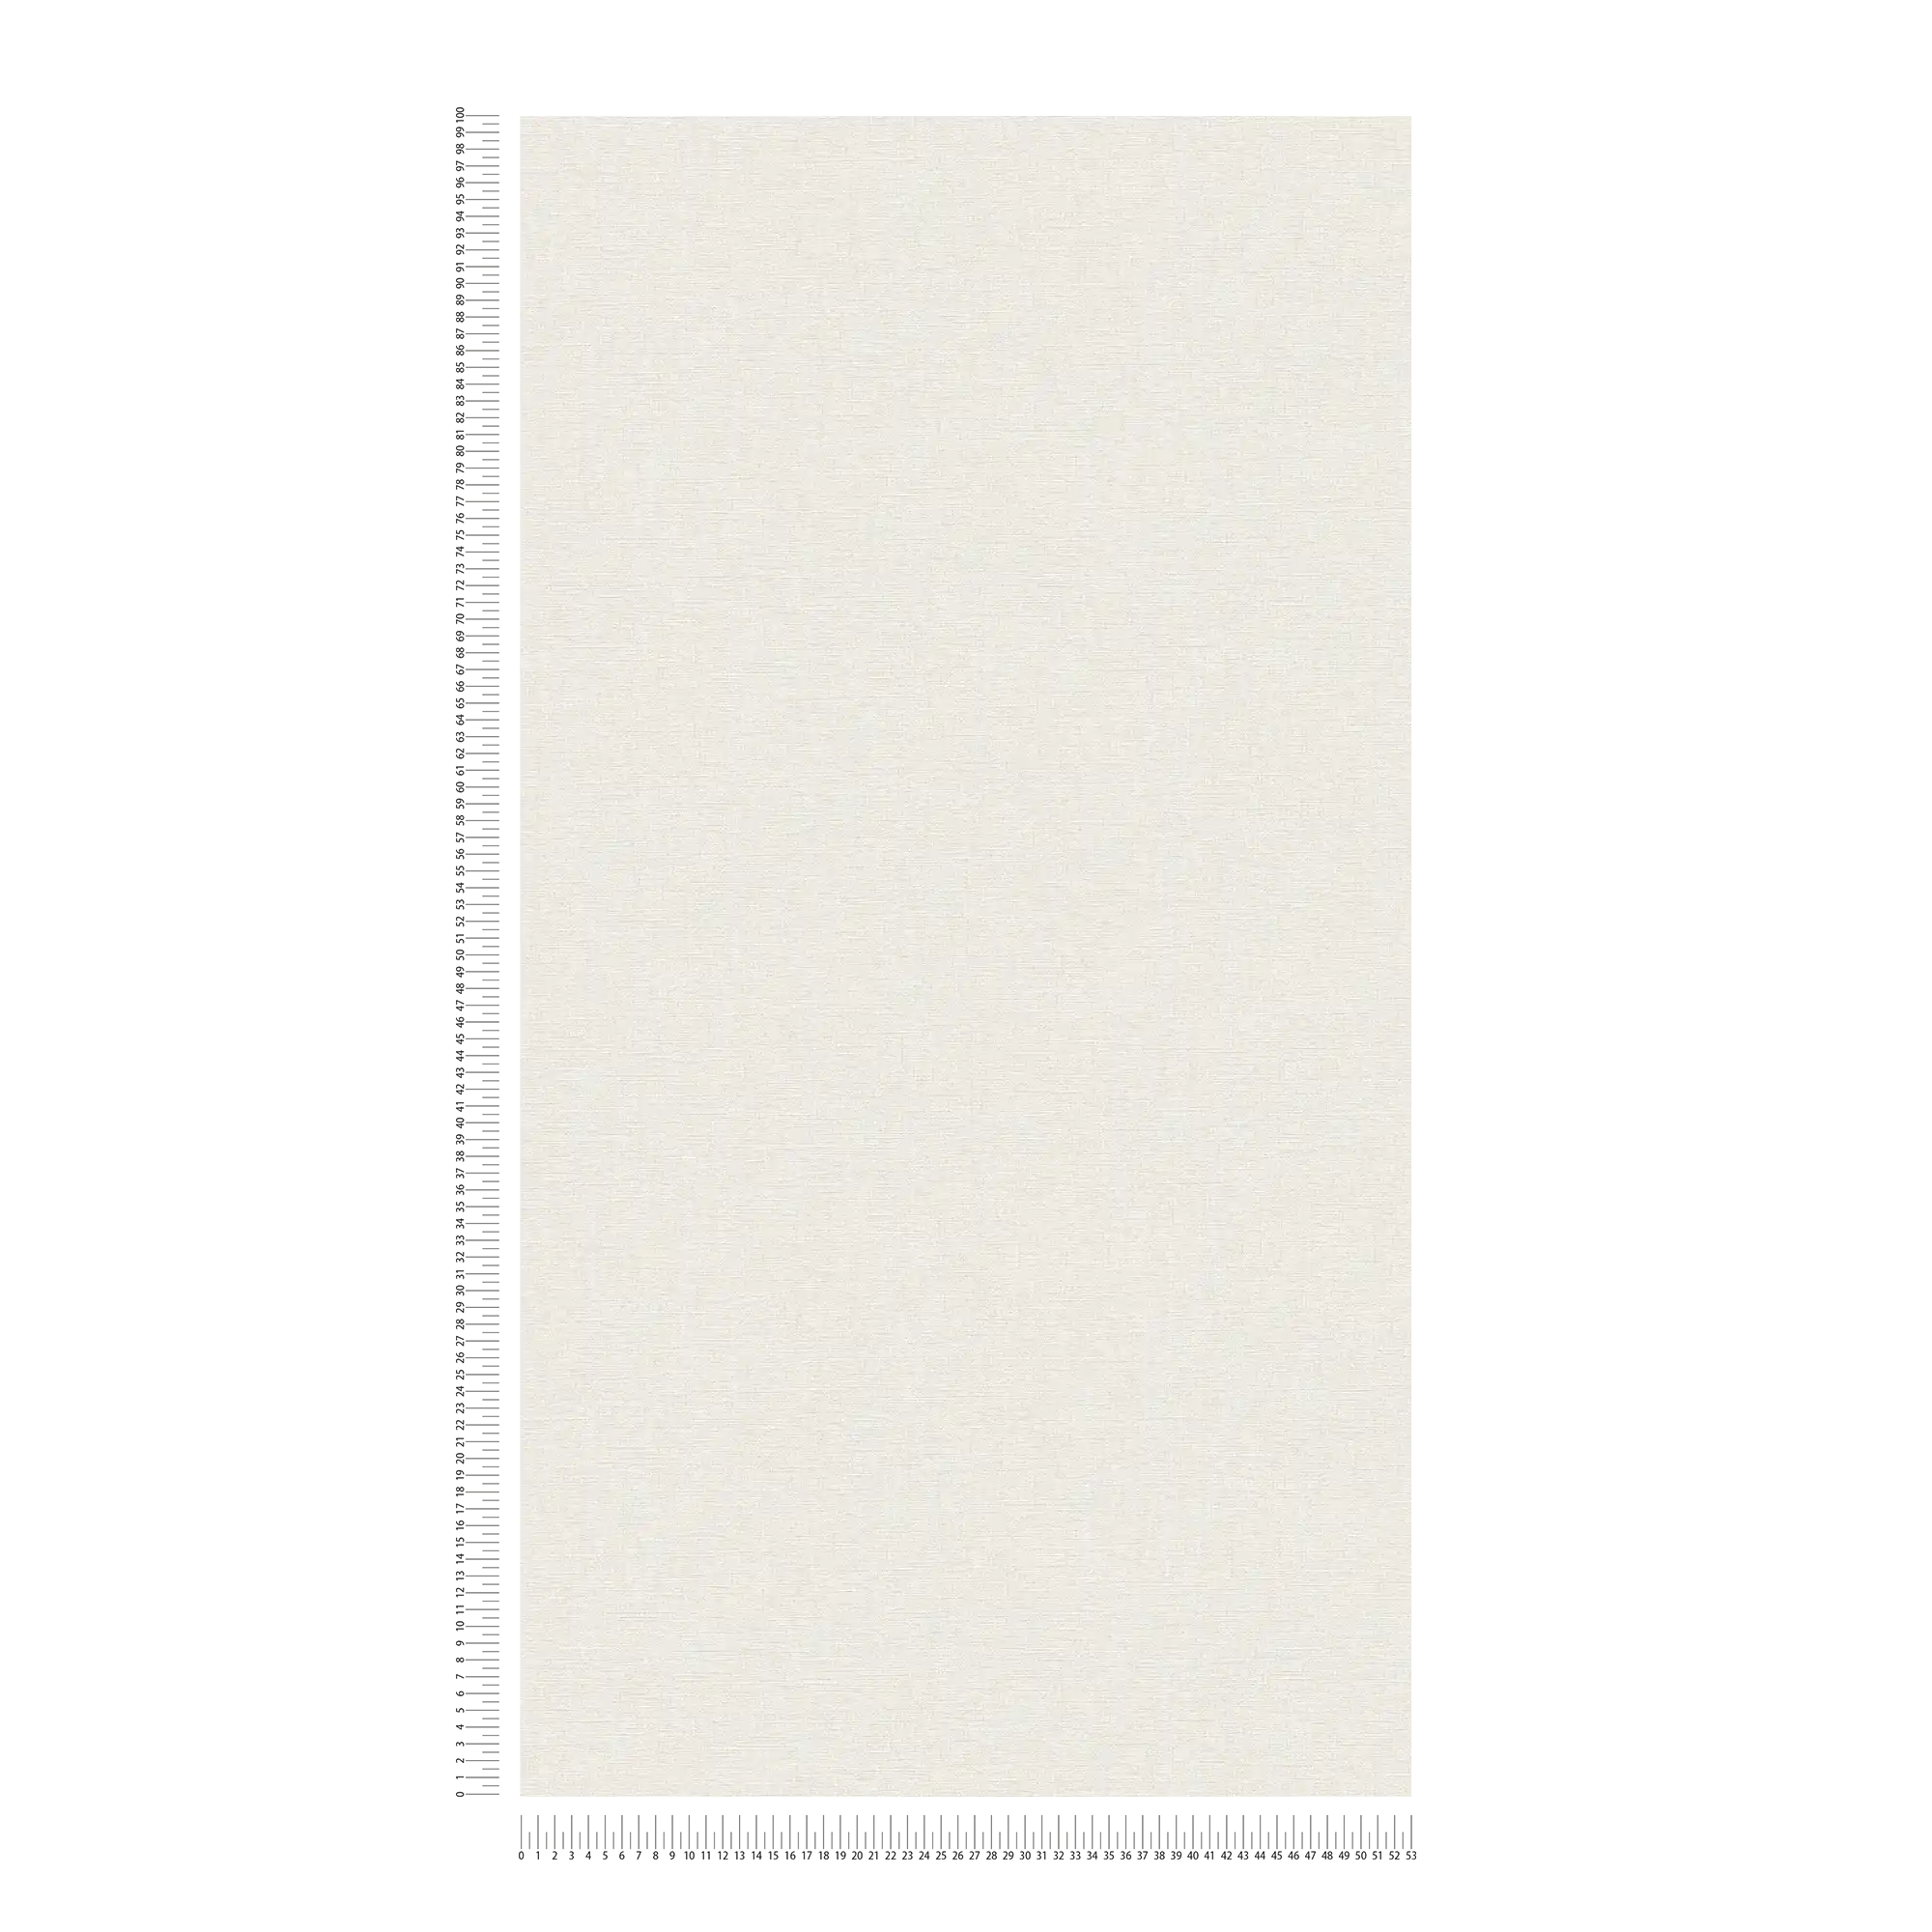             Carta da parati non tessuta a tinta unita con disegno della struttura, opaco - crema, bianco
        